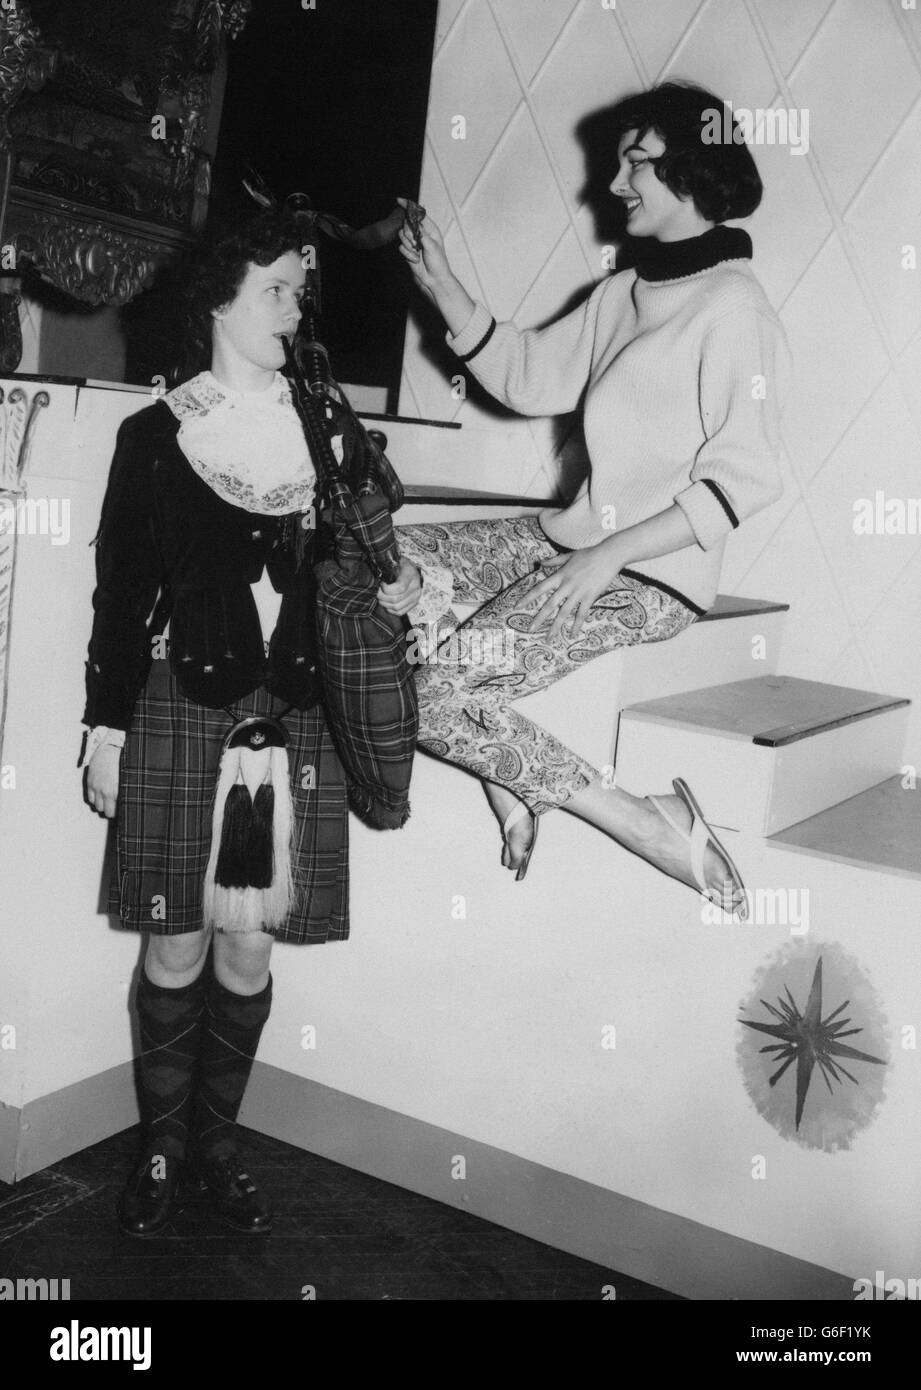 Miss Germany, Studentin und Model Petra Schurmann, bewundert die Dudelsäcke der 16-jährigen Dagenham Girl Piper Mary Wade, die sie für sie im Lyceum, Strand, London, vorführen wollte. Beide waren für eine Probe des heutigen Miss World-Wettbewerbs-Finales anwesend, bei dem die Dagenham Girl Pipers auftreten werden. Stockfoto